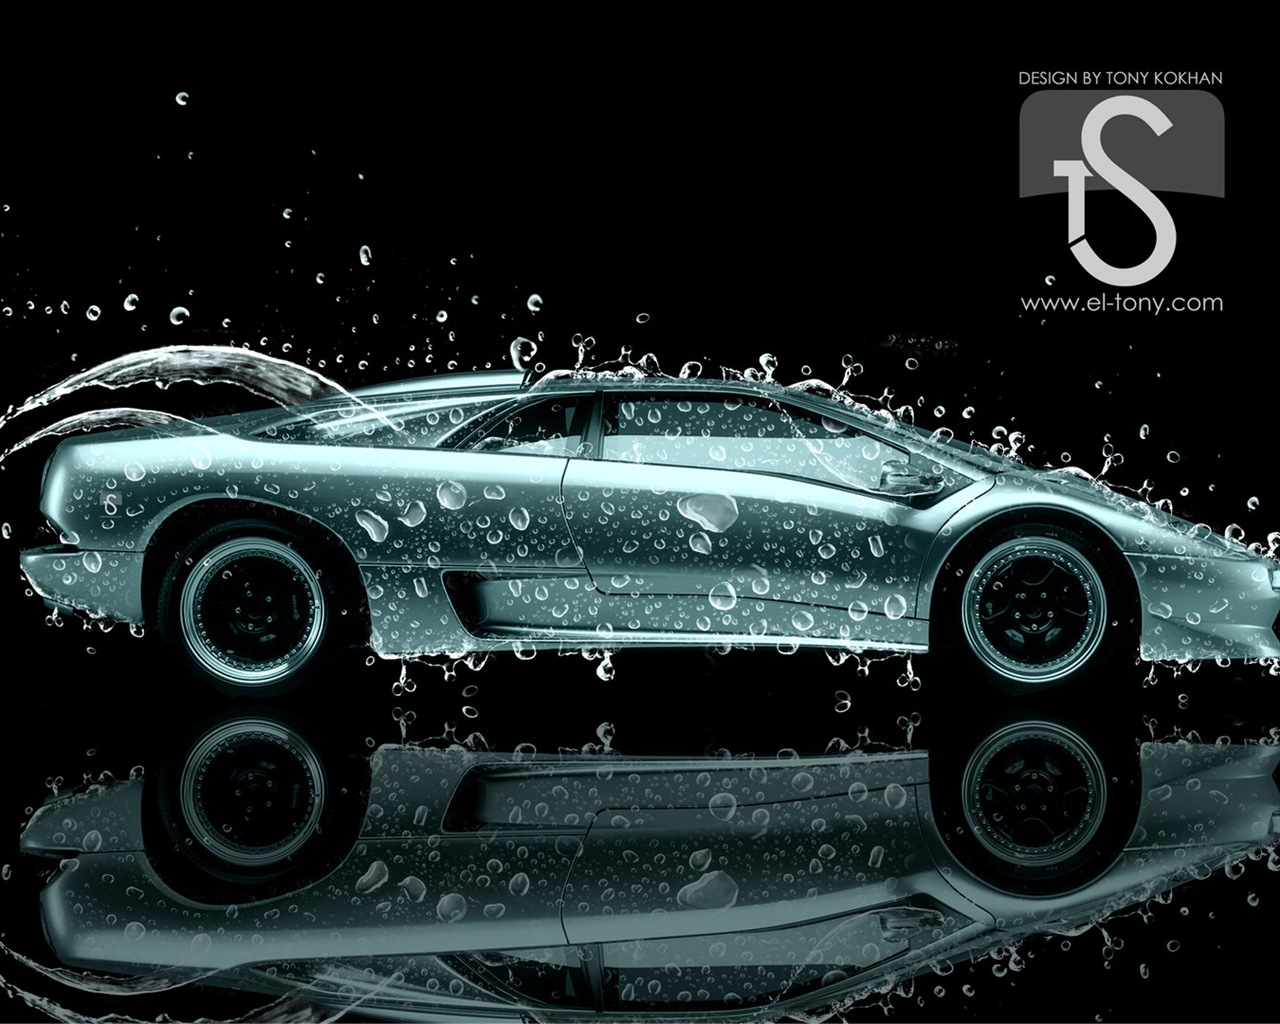 Wassertropfen spritzen, schönes Auto kreative Design Tapeten #27 - 1280x1024